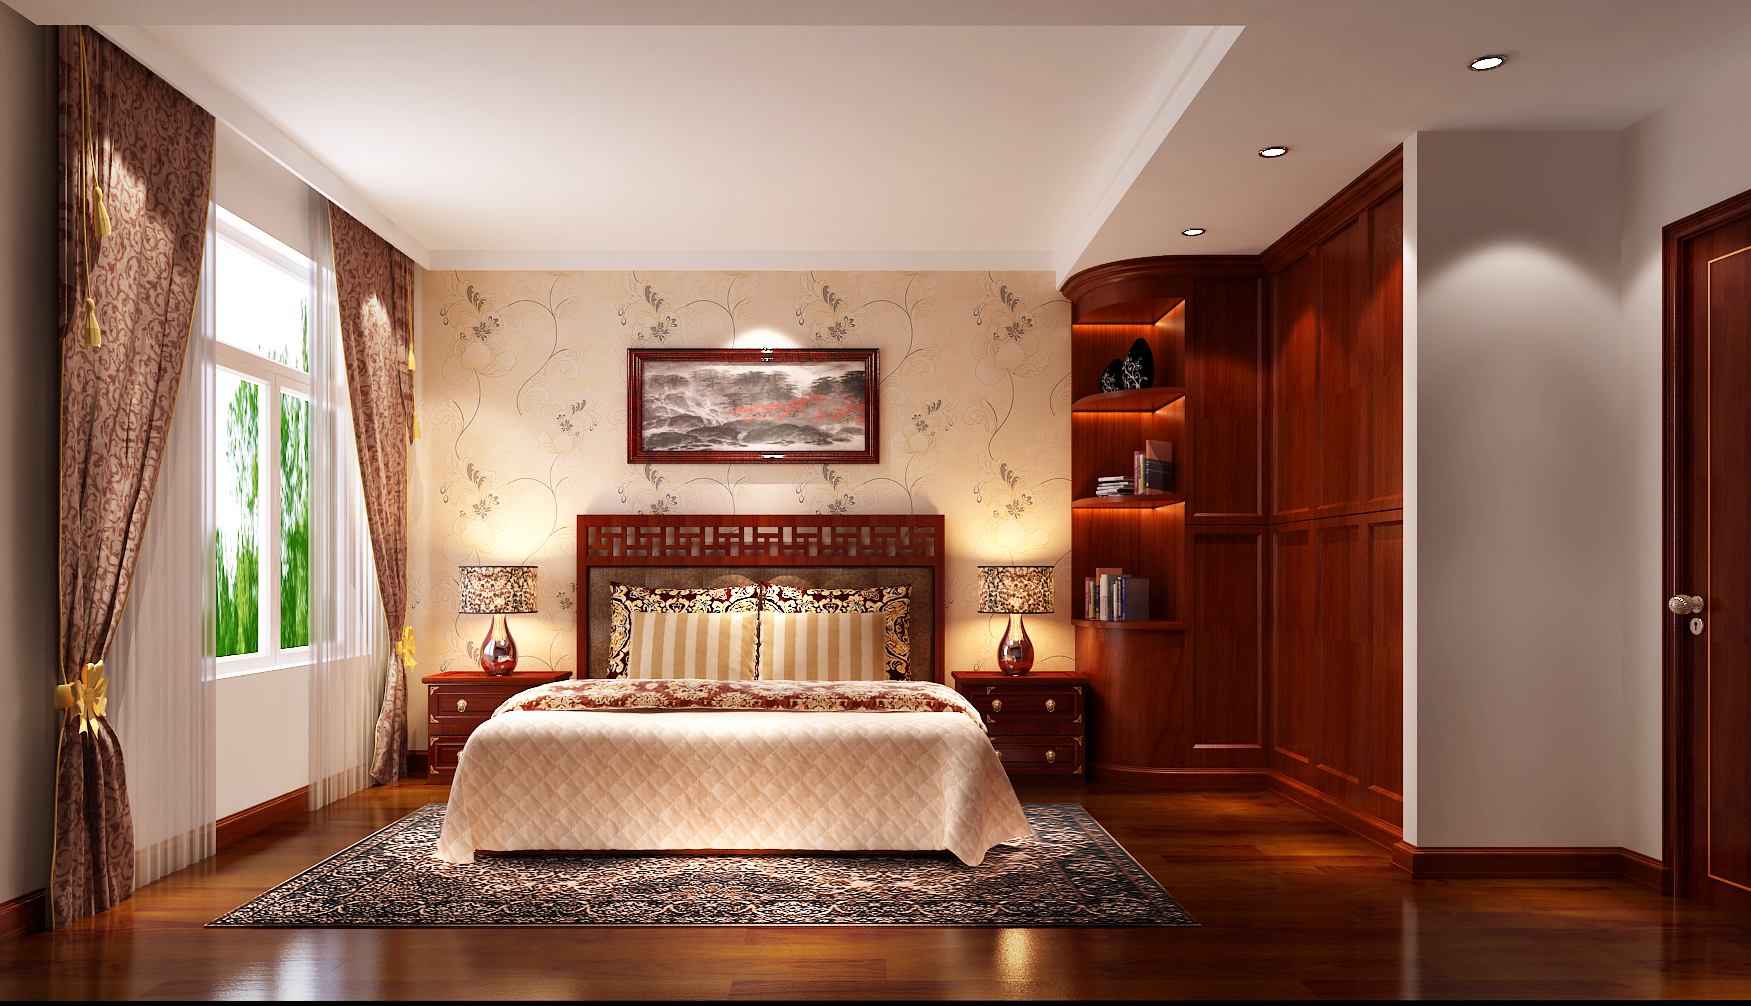 简约 新中式 高度国际 三居 白领 80后 小资 婚房 公寓 卧室图片来自高度国际别墅装修设计在长滩壹号新中式婚房的分享